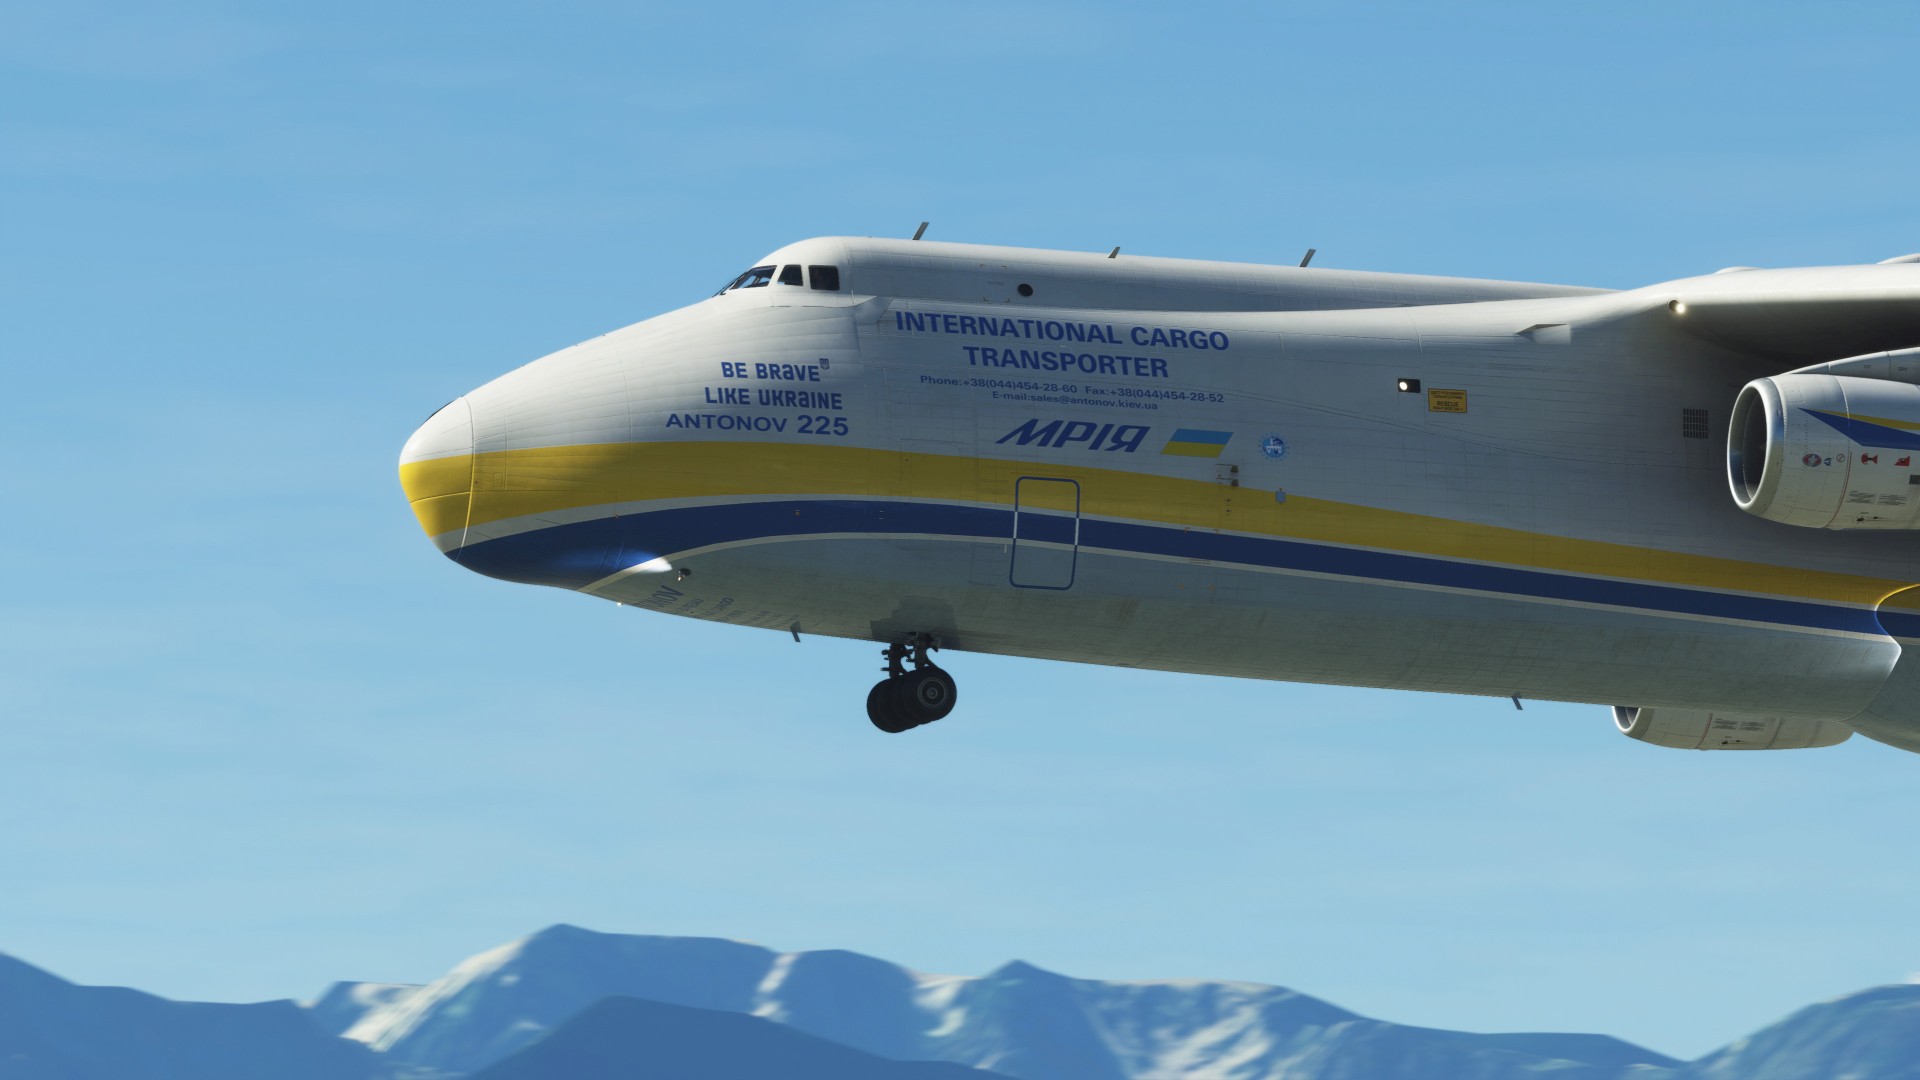 Microsoft Flight Simulator - Antonov An-225 “Mriya” Screenshot